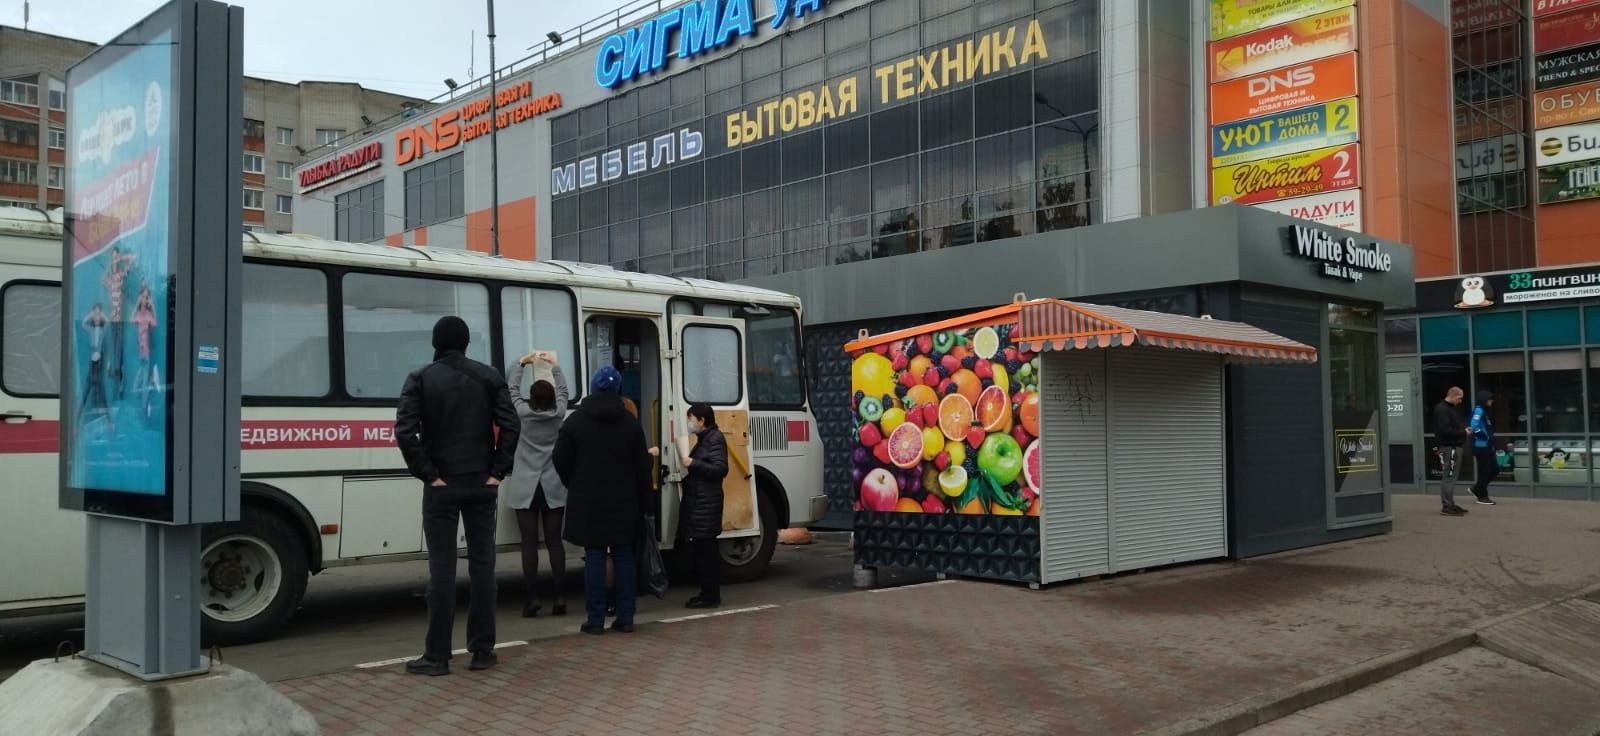 Мобильный пункт вакцинации открылся в одном из микрорайонов Петрозаводска